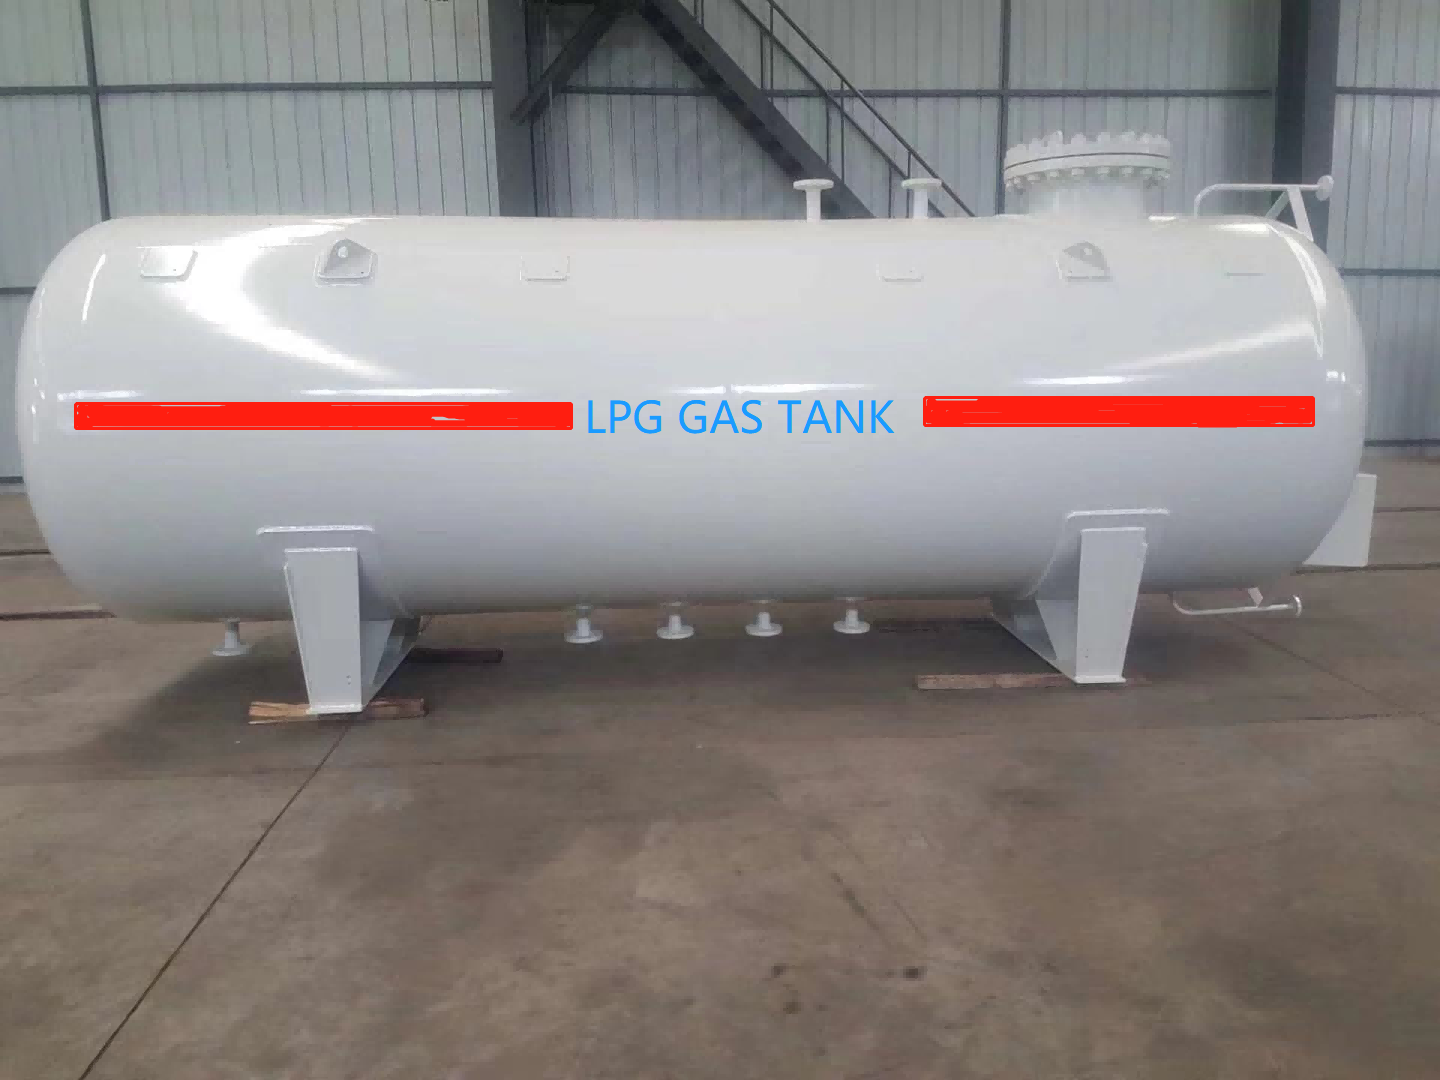 Working pressure of LPG storage tank